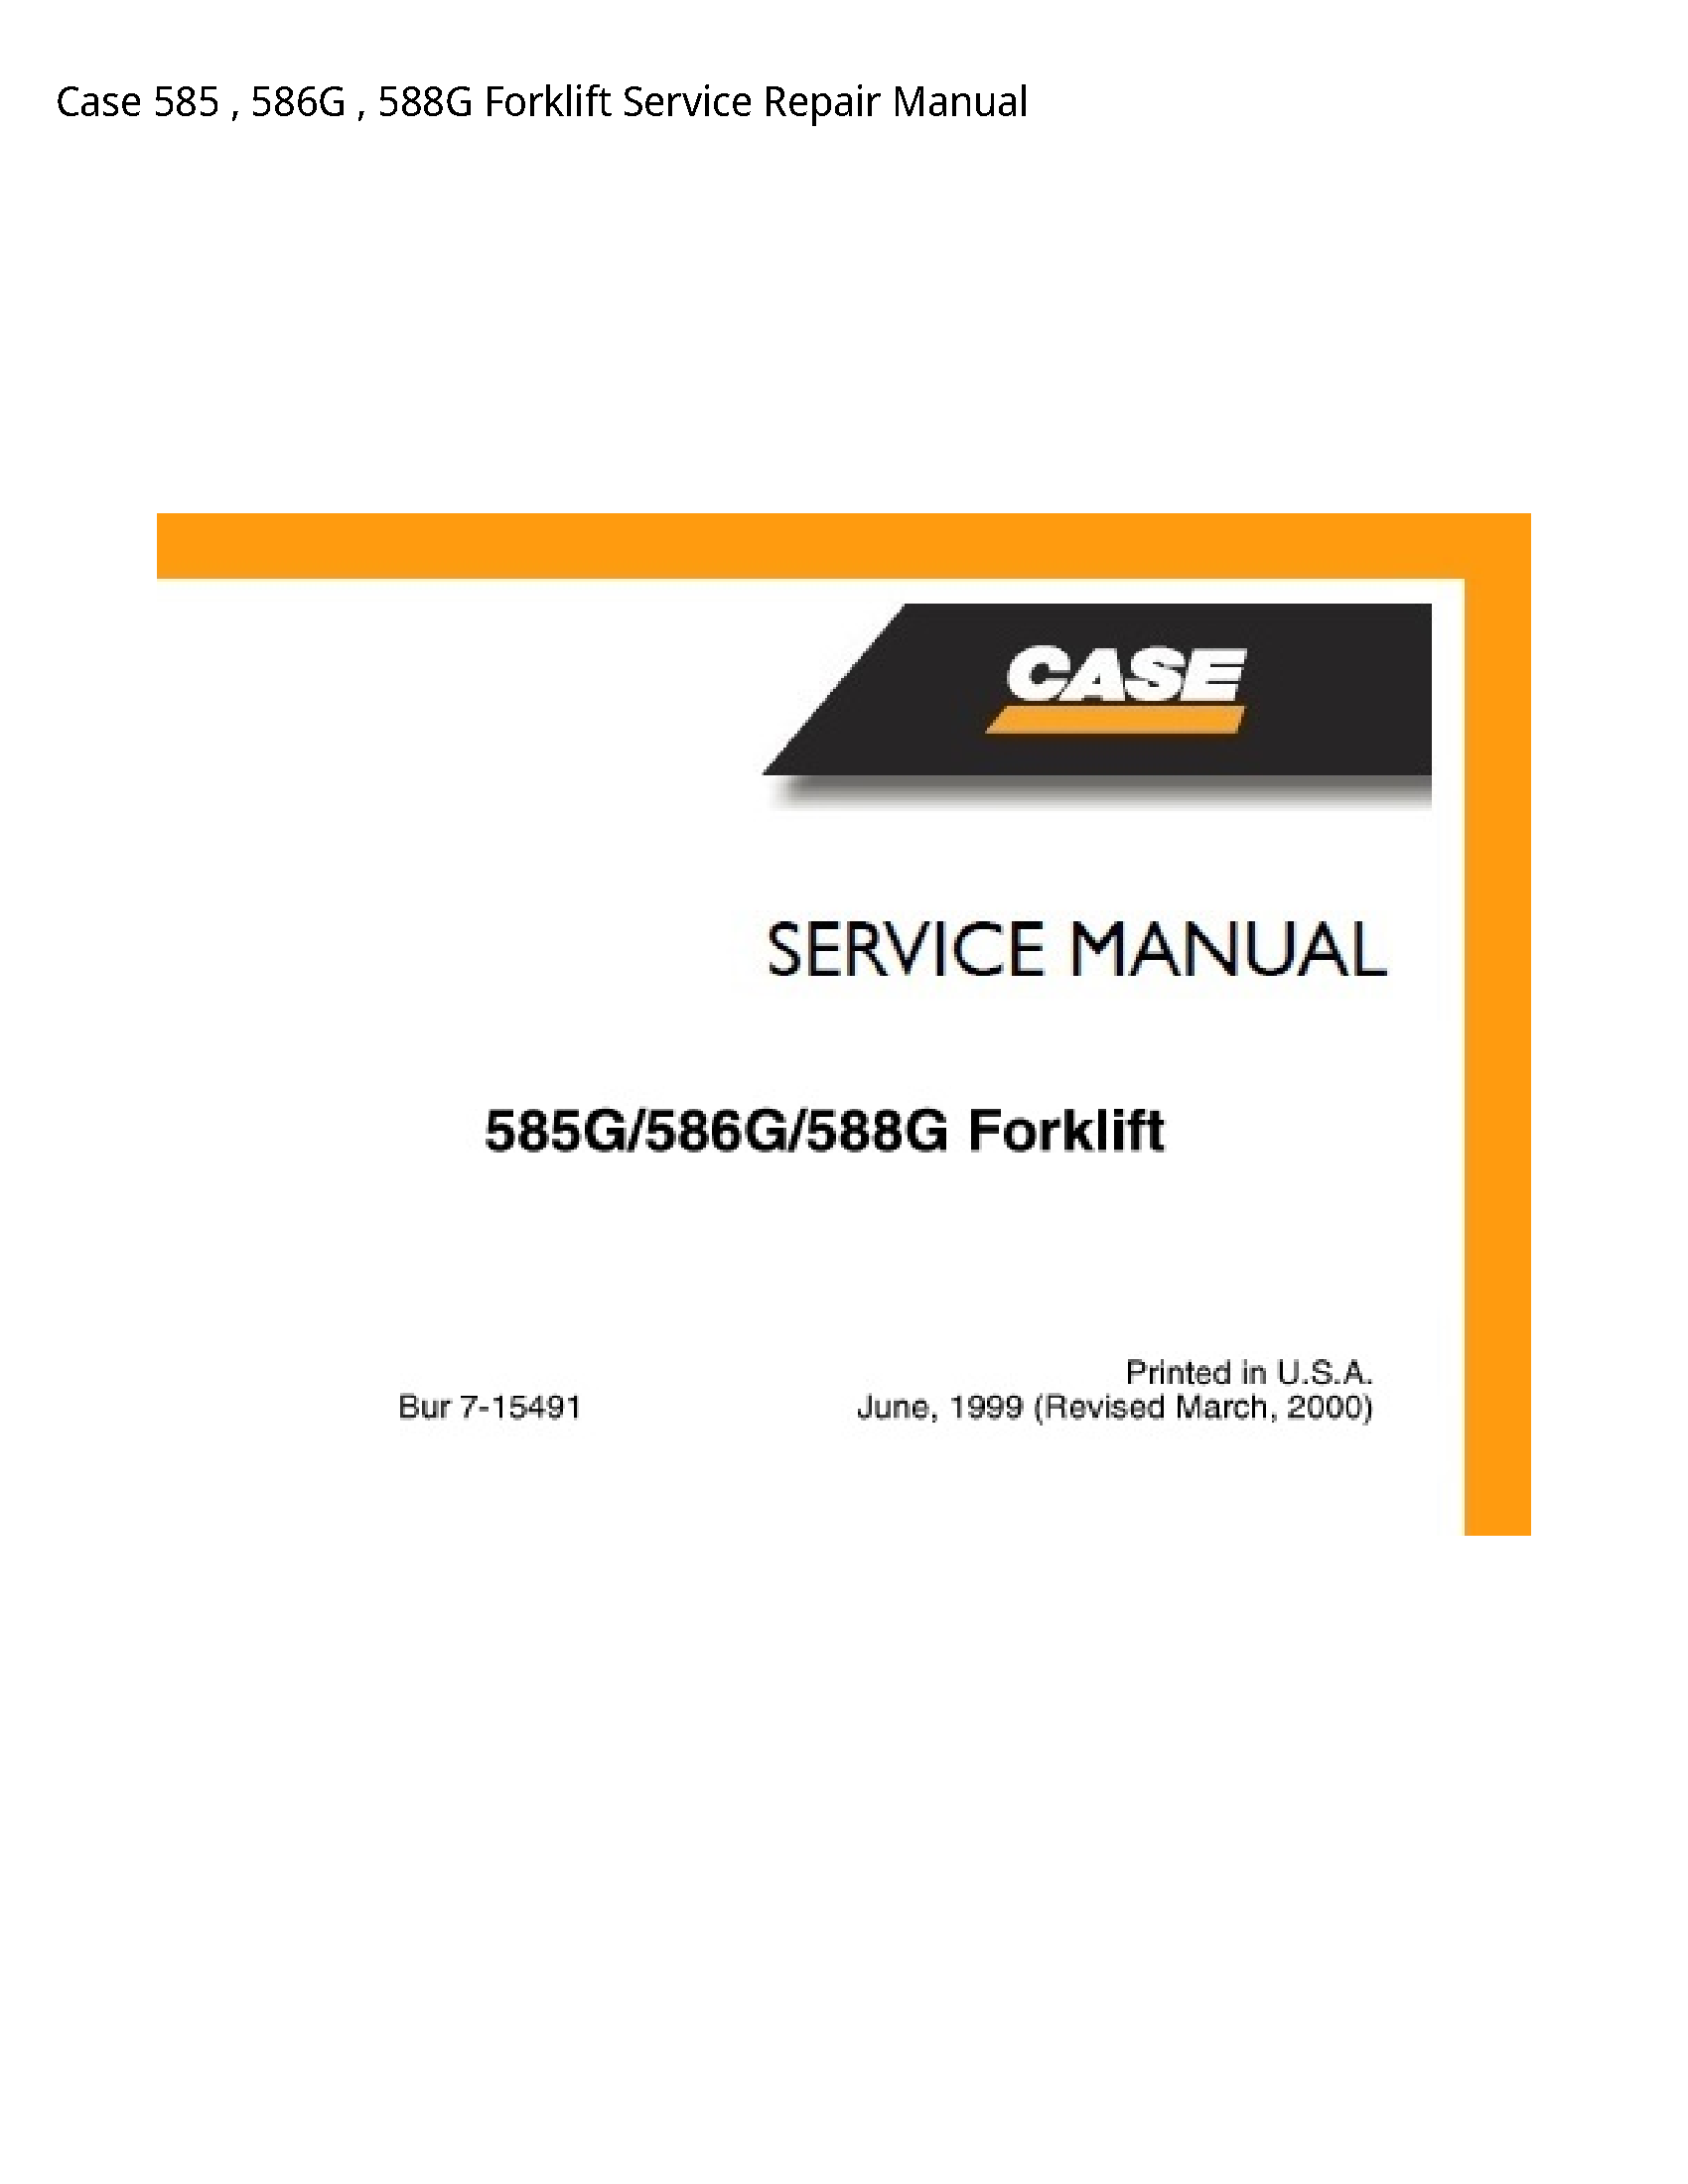 Case/Case IH 585 Forklift manual